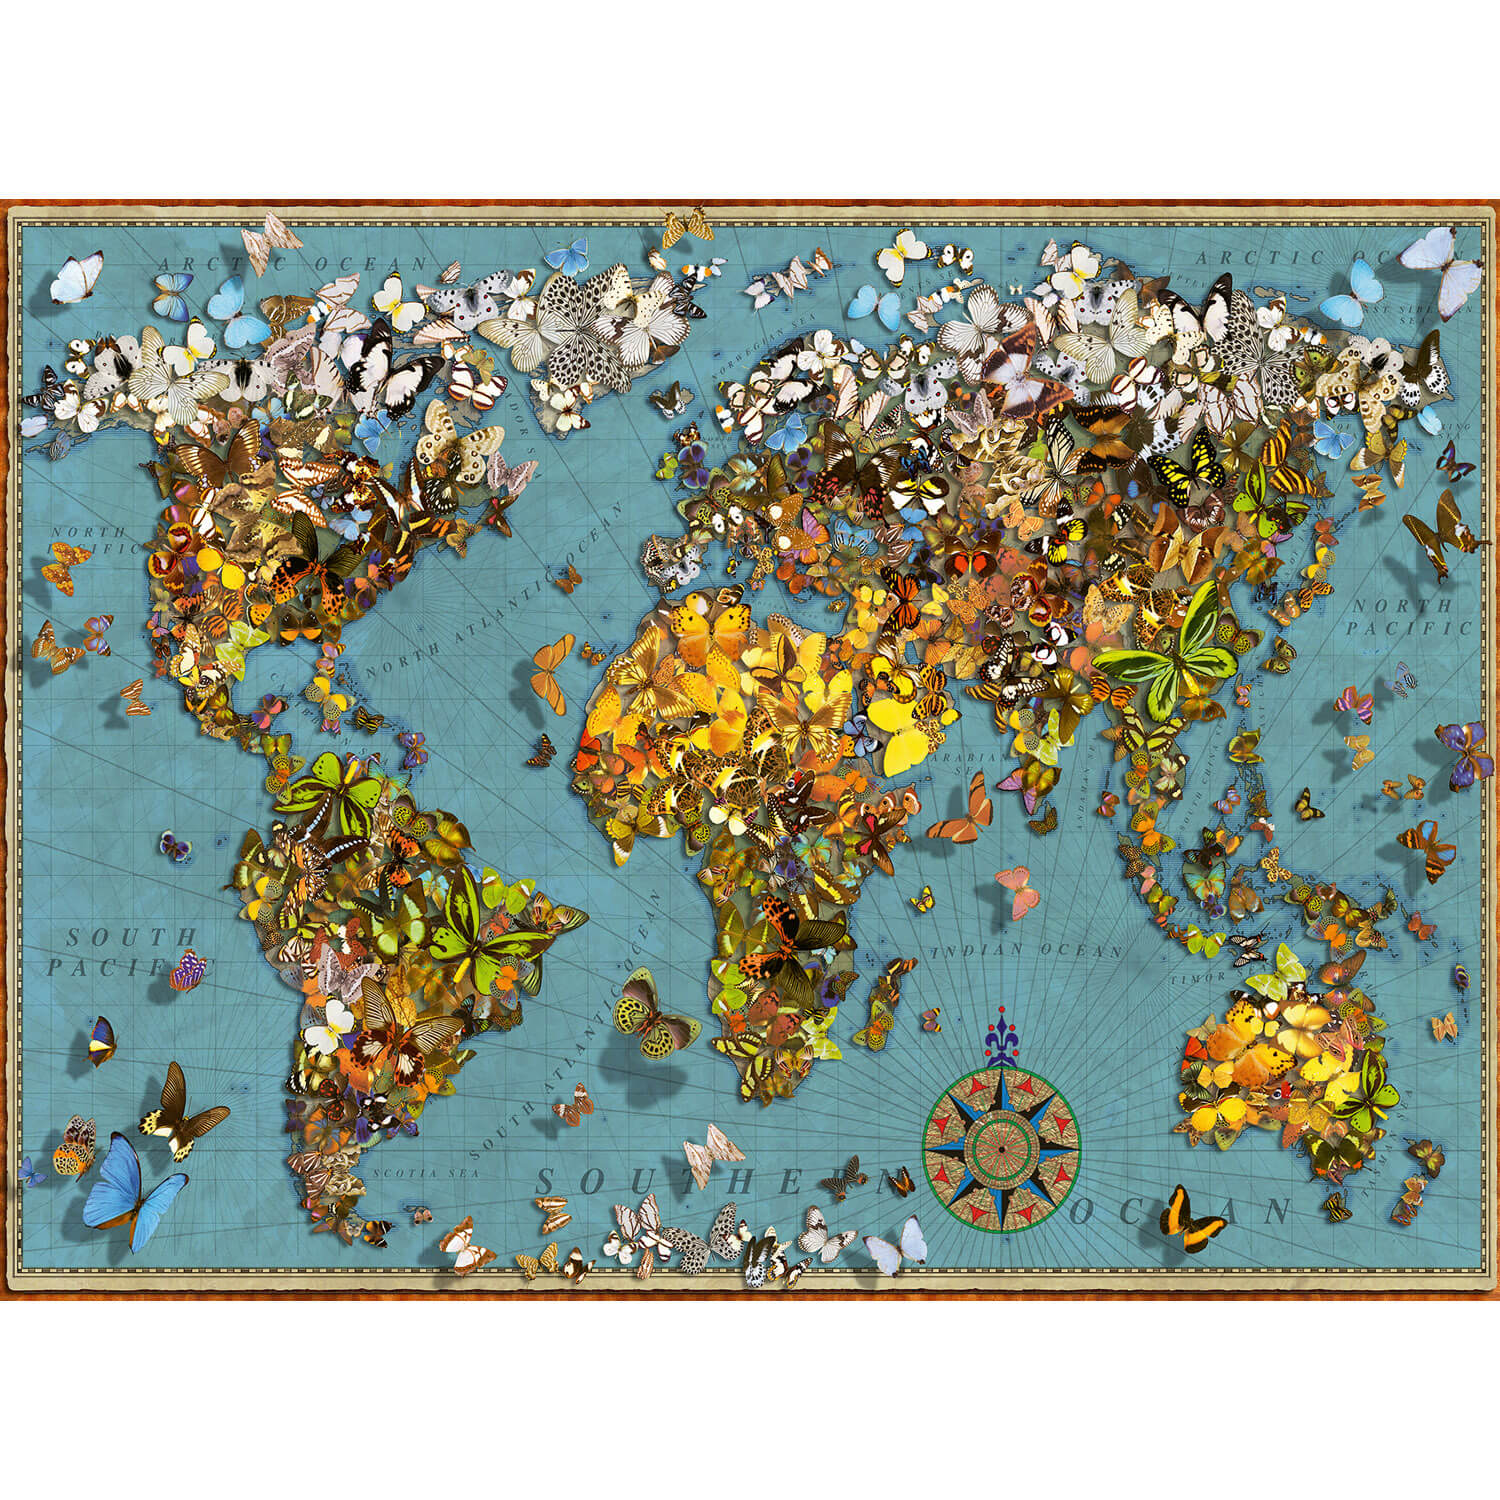 Buy Ravensburger mappemonde (3d puzzle) Puzzle